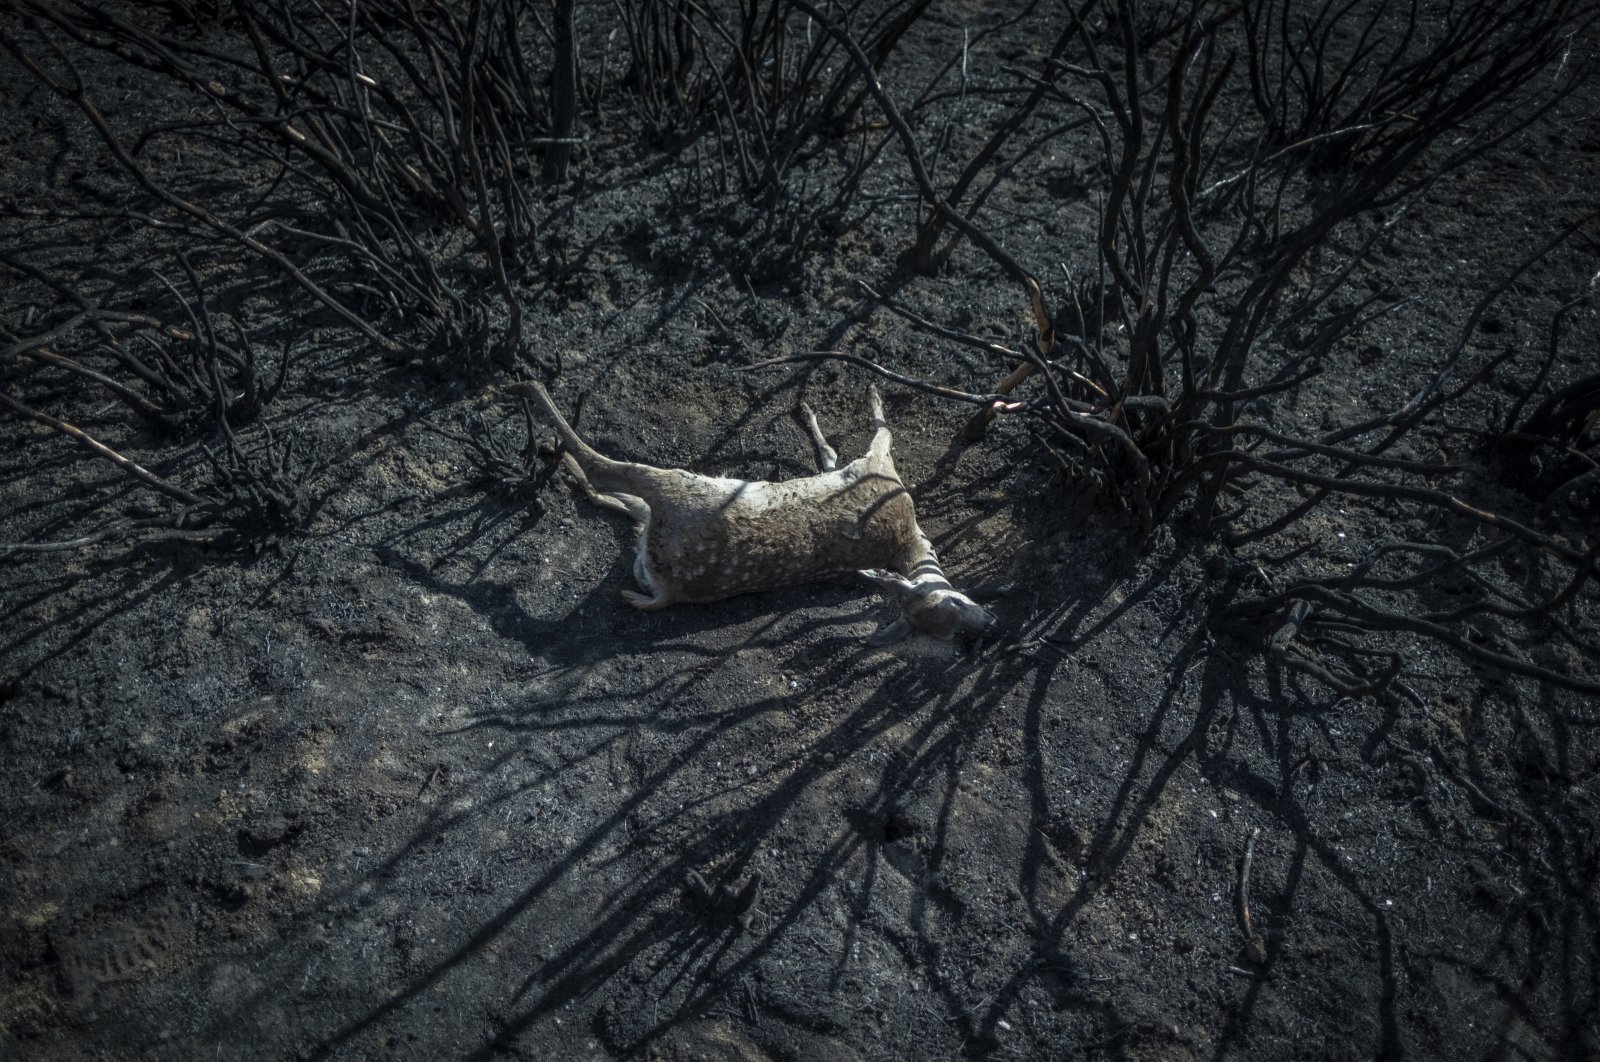 Aftermath of the Sierra de la Culebra wildfire in Villardeciervos, Zamora province, Spain, June 21, 2022. (EPA Photo)